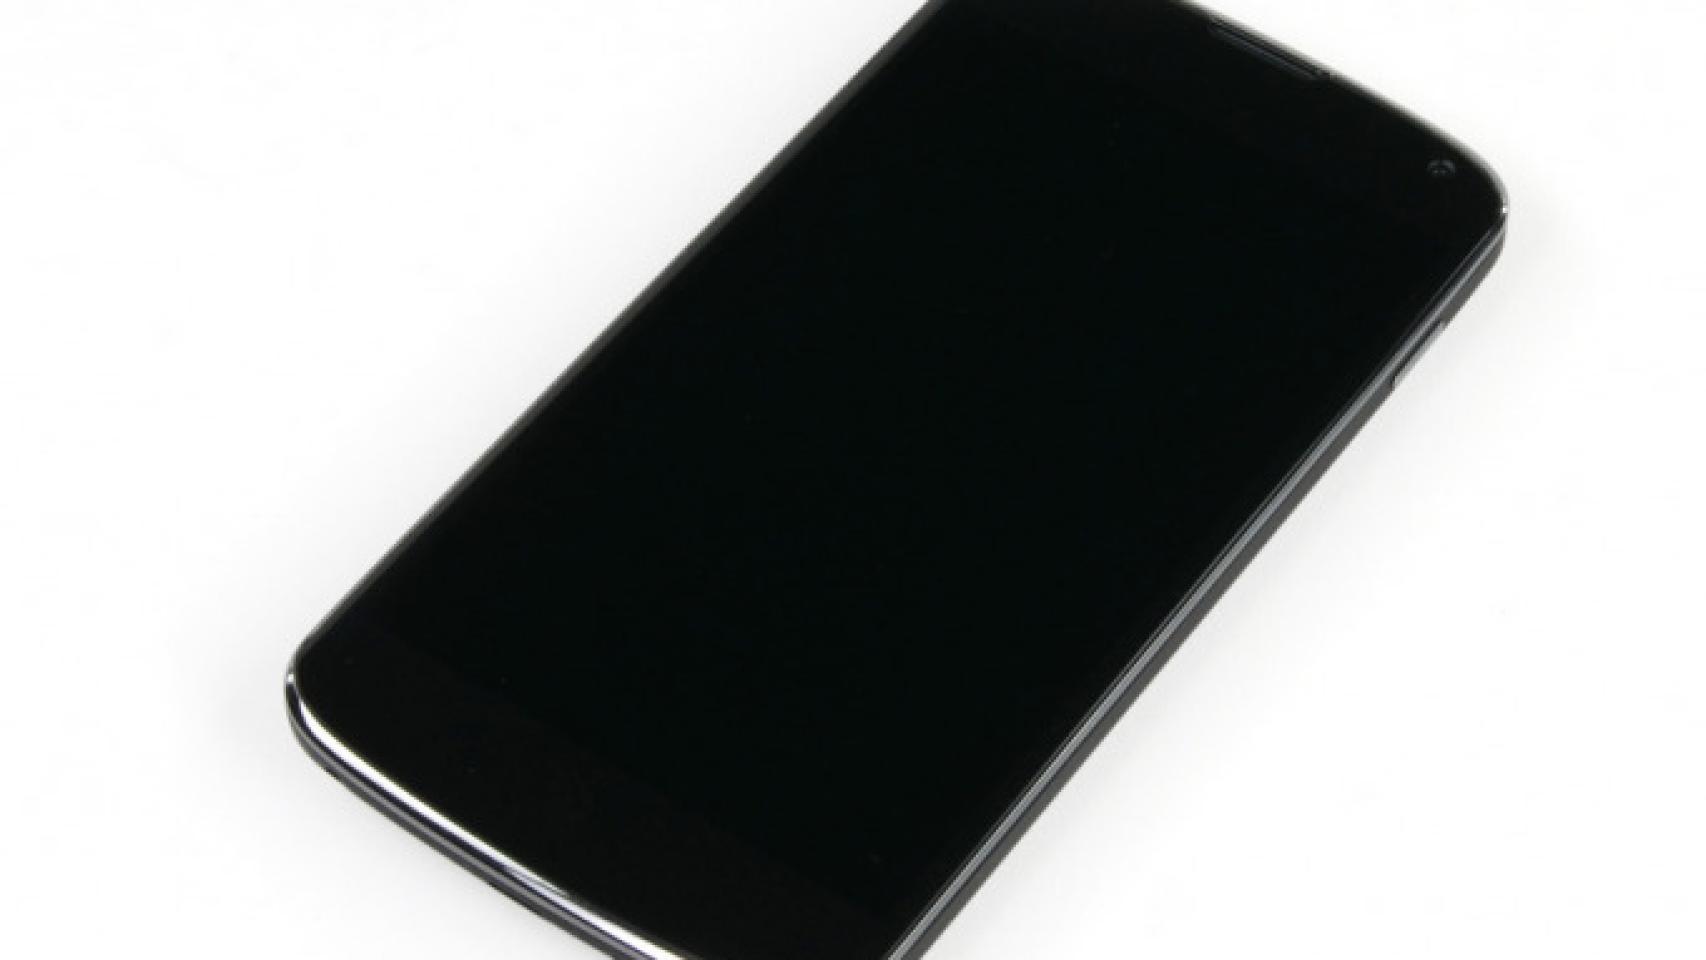 Nexus 4 despiezado: Se descubre la inclusión de un chip 4G LTE